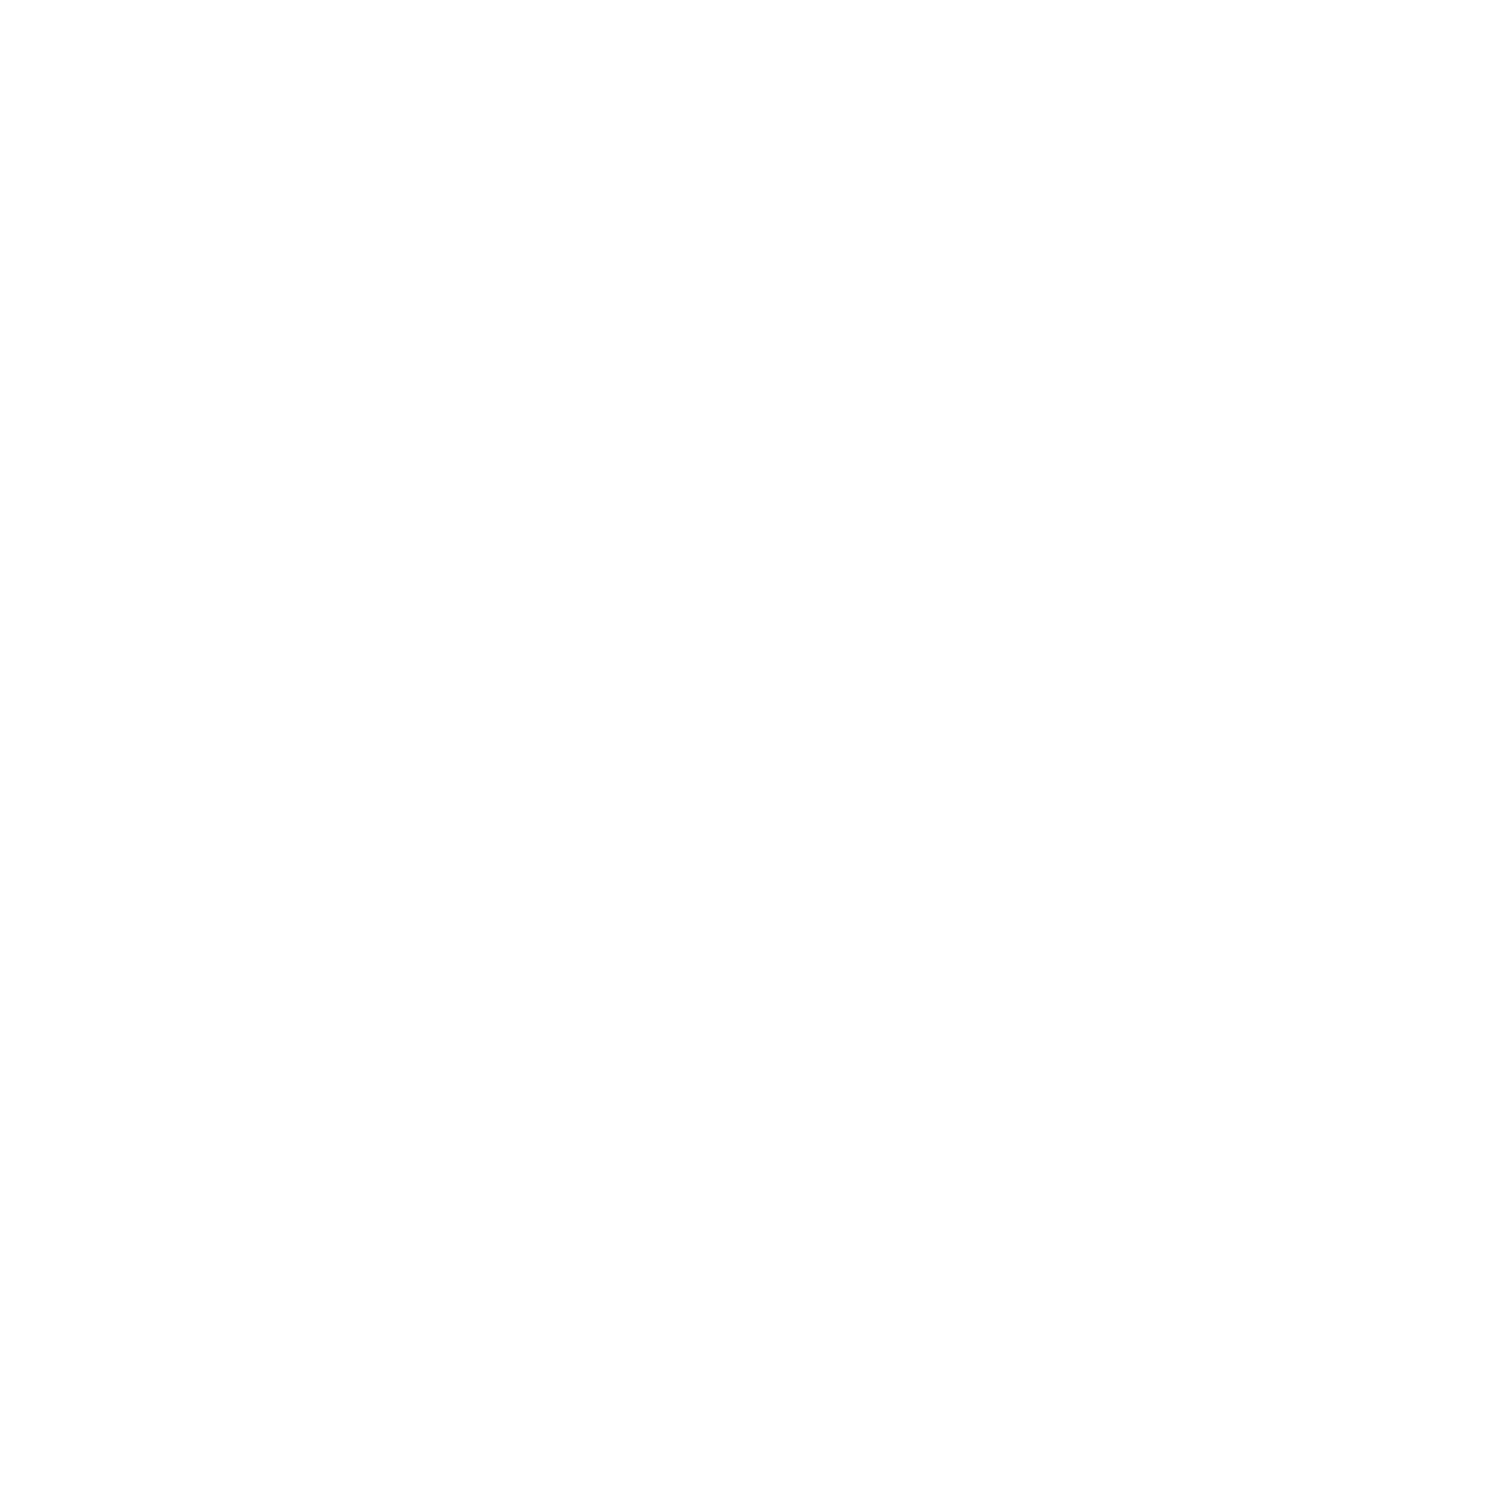 Quad logo pour fonds sombres (PNG transparent)